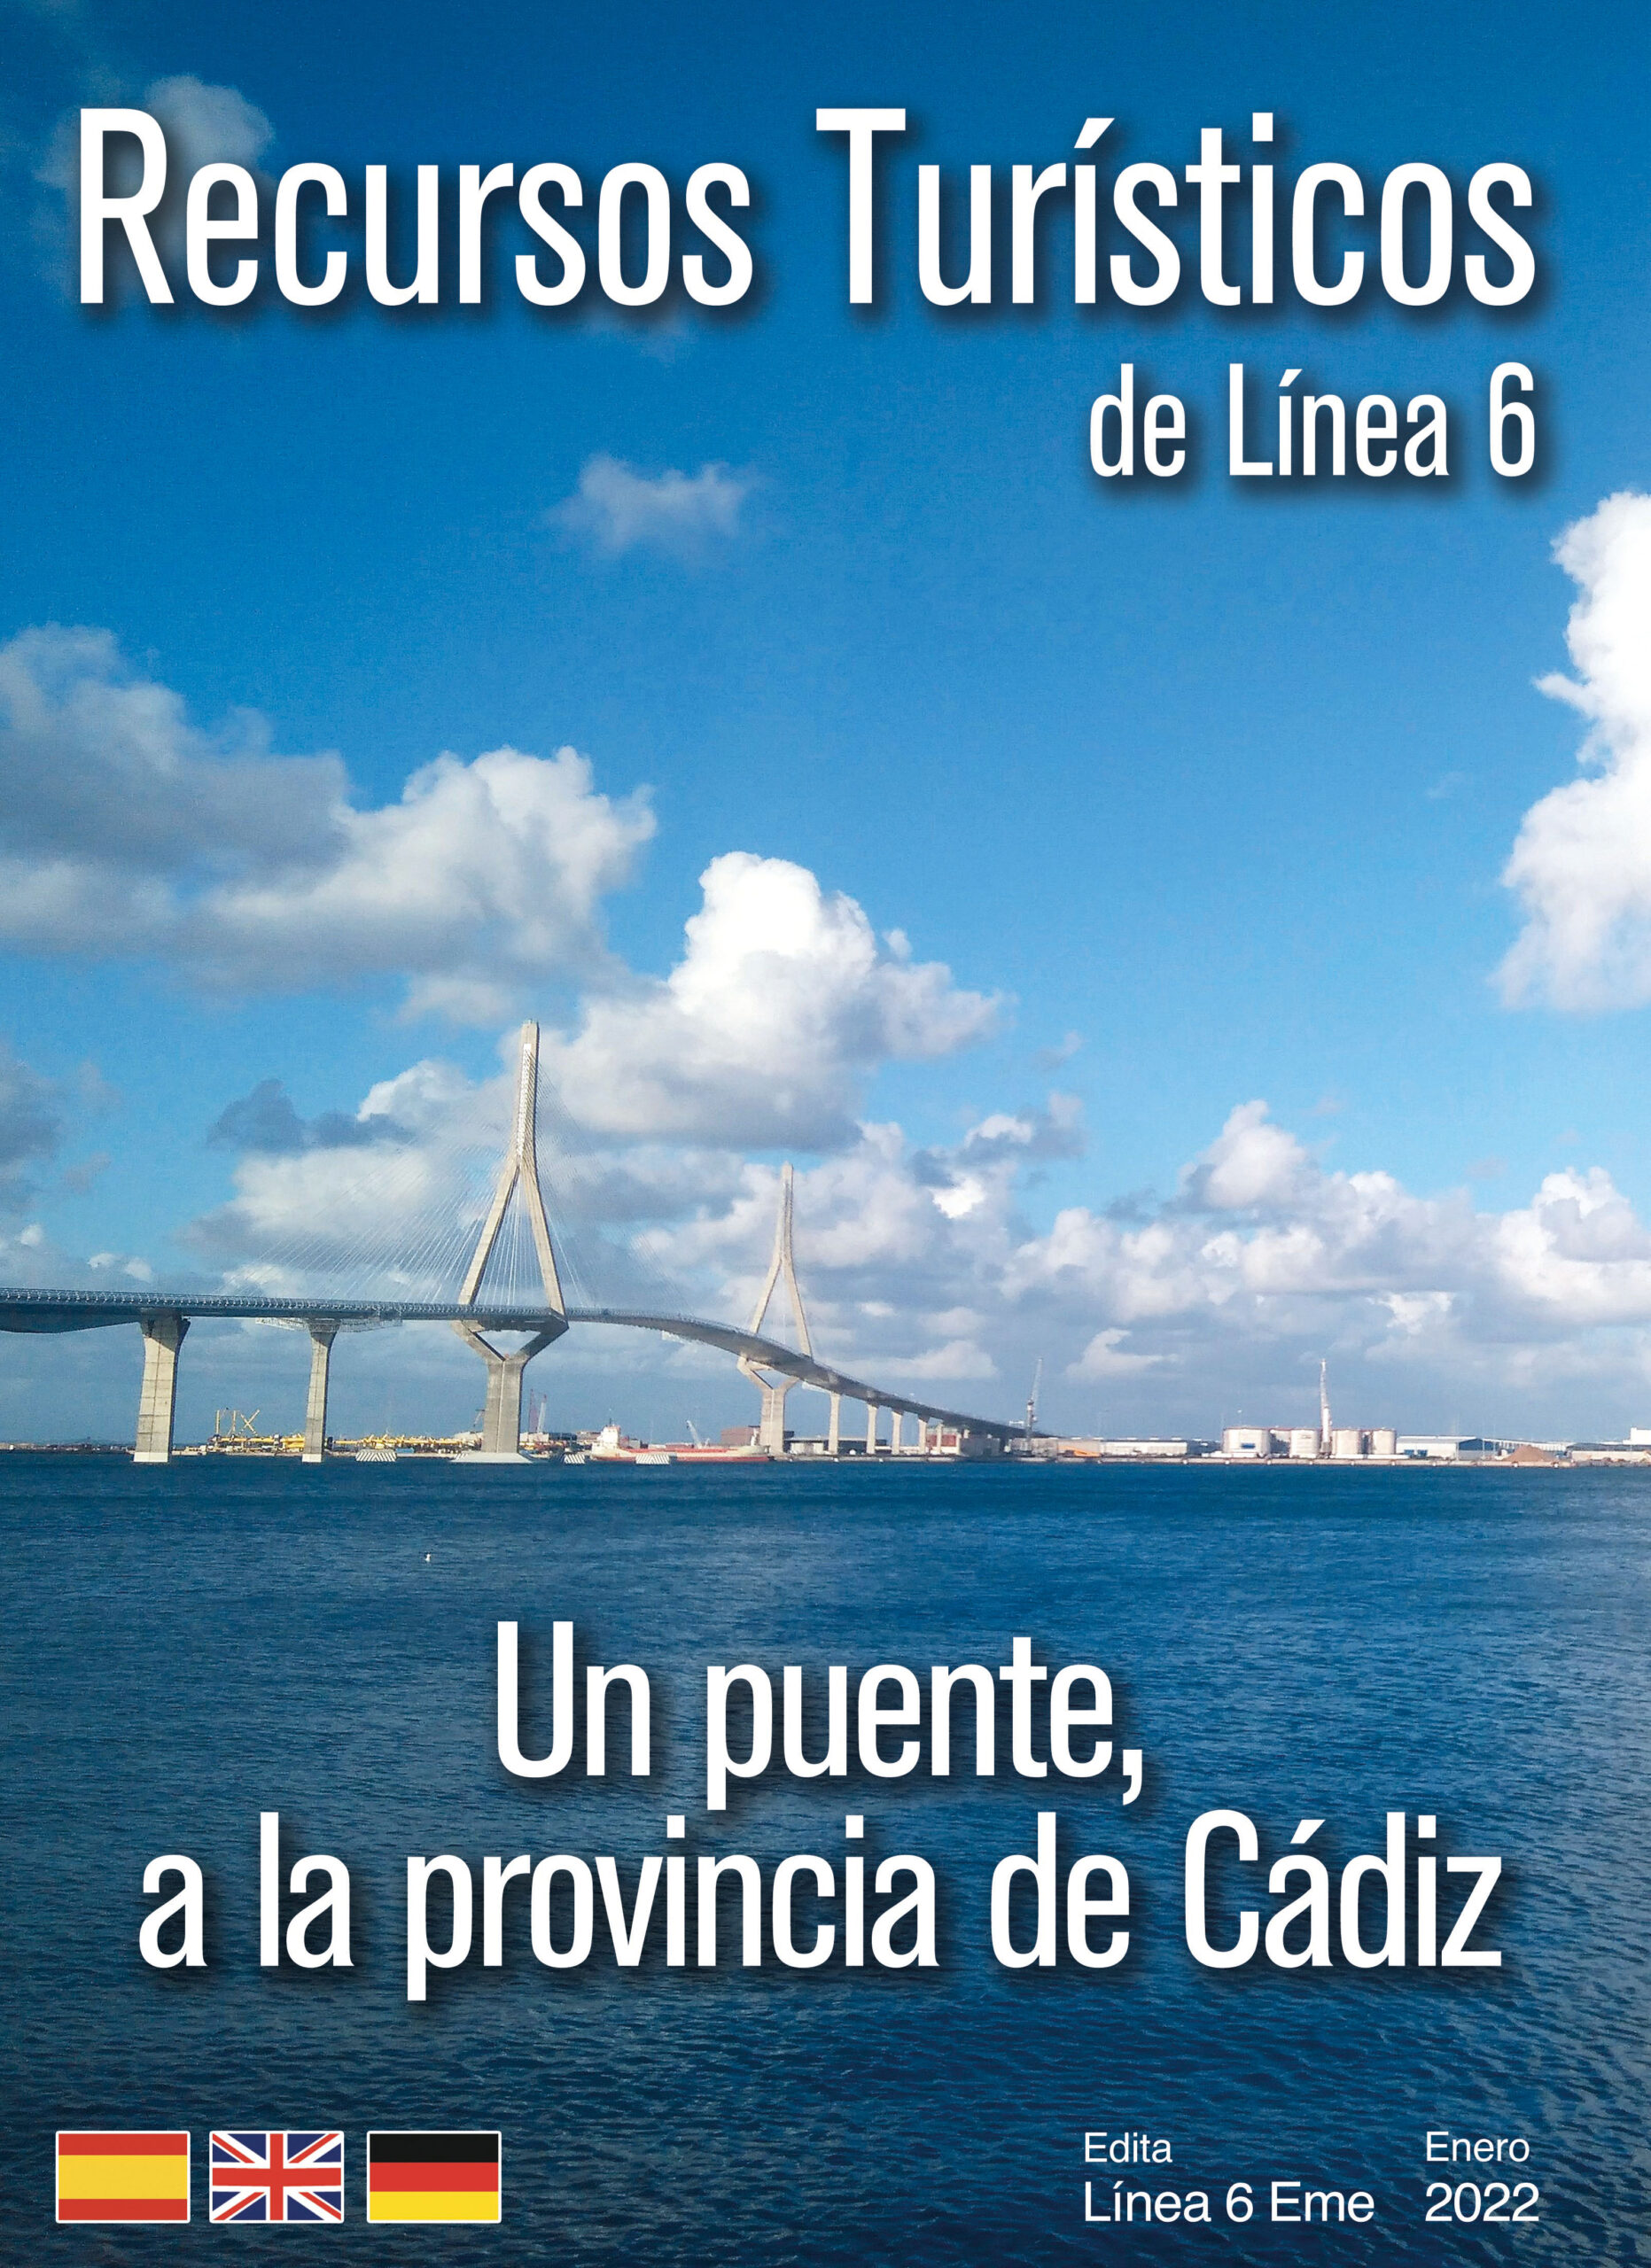 Recursos Turísticos de la Provincia de Cádiz. Enero 2022